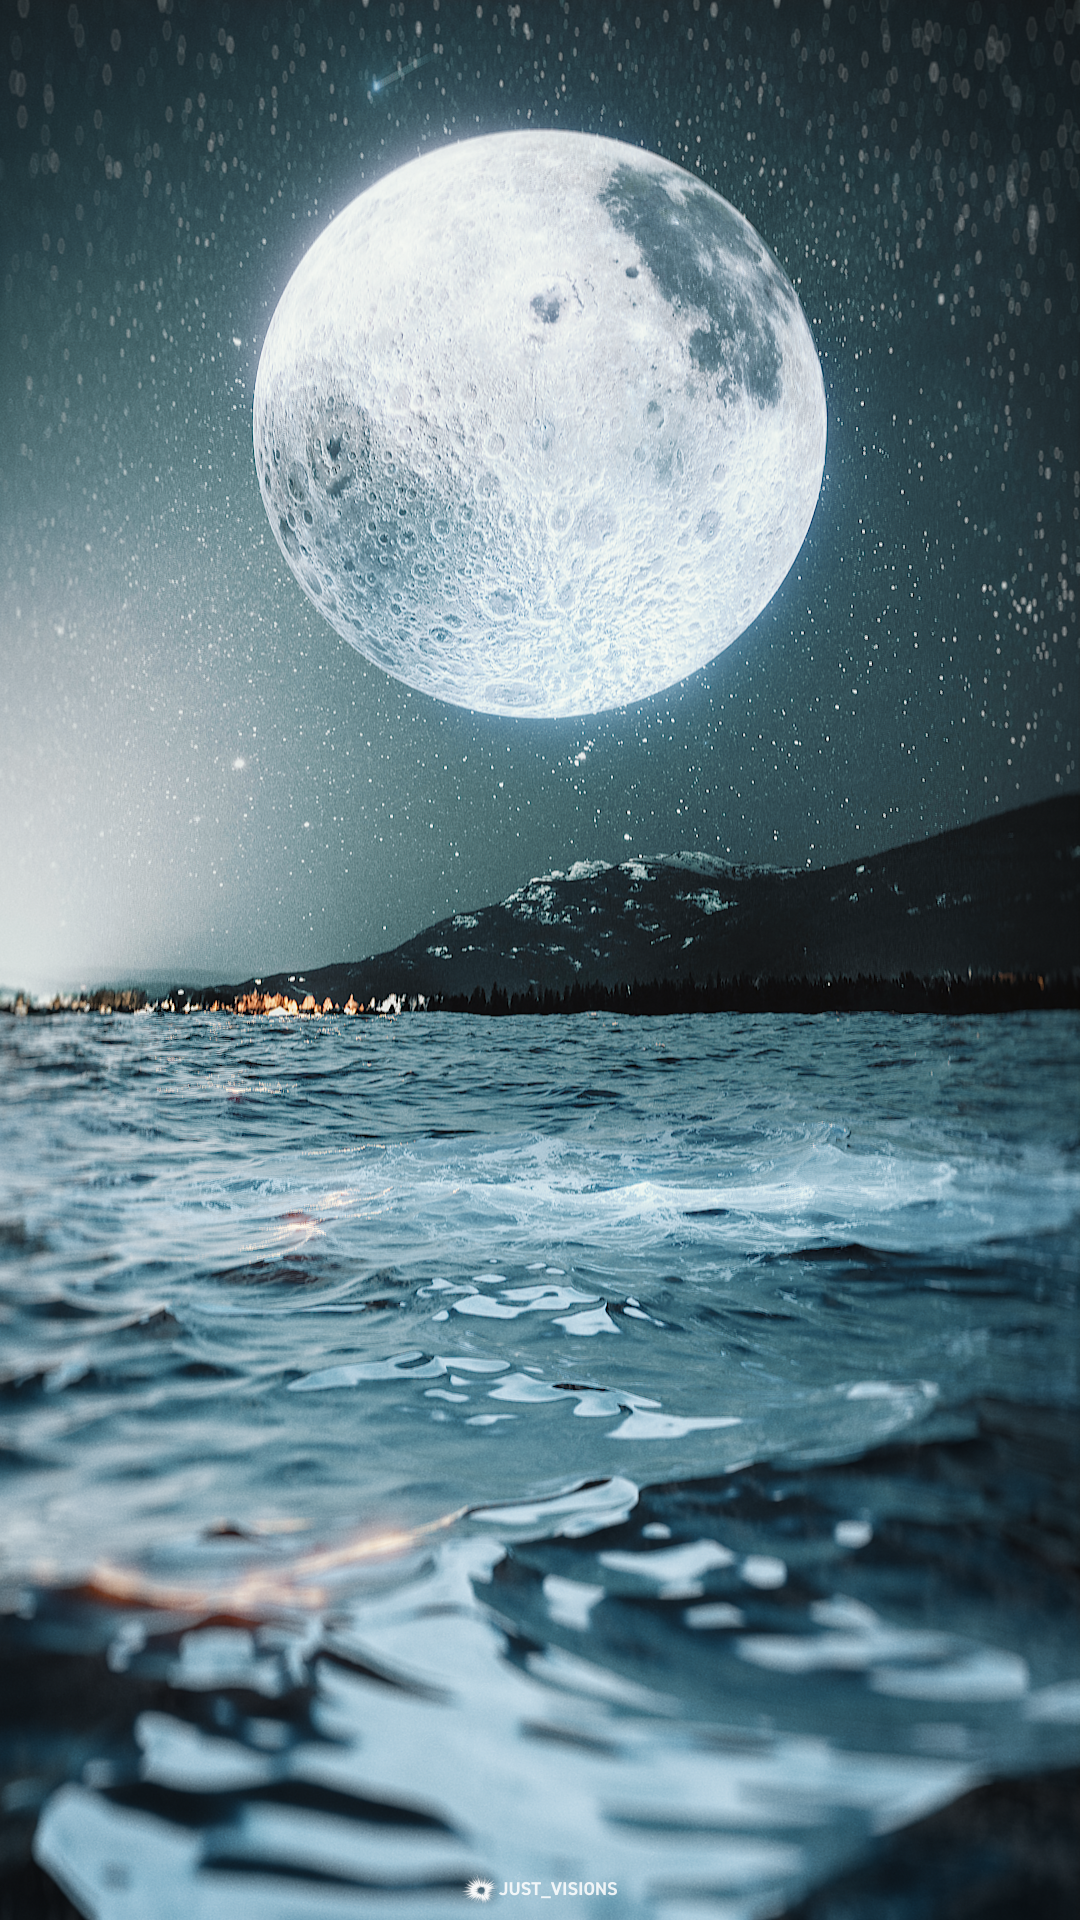 General 1080x1920 Moon space artwork digital art stars Just Visions calm portrait display water night sky watermarked